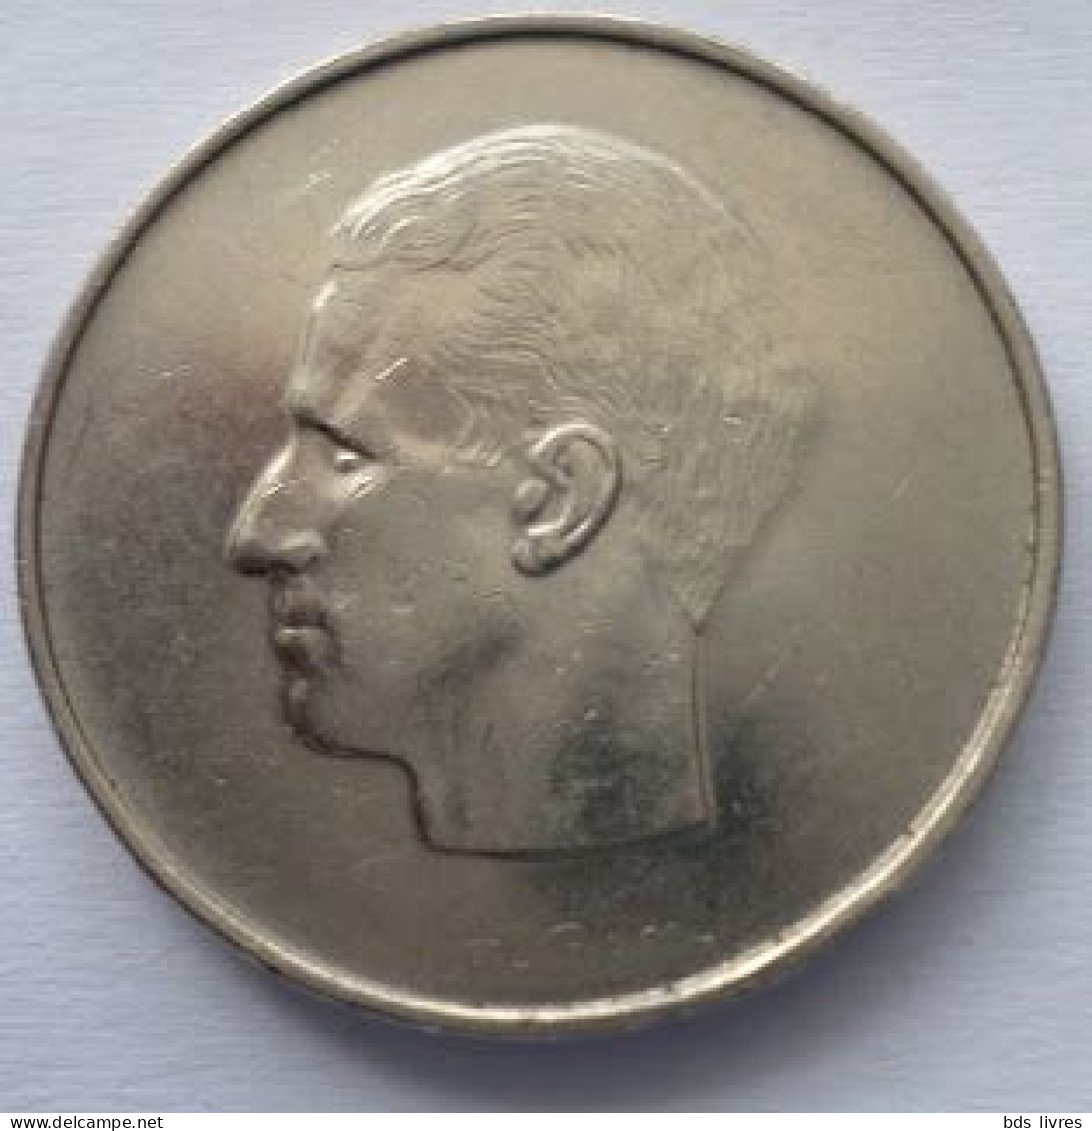 Baudouin BELGIE 10 Frank (10 Francs)  Année 1969 (Flamande)  -- Pièce Non Nettoyée  (voir Images) - 10 Frank